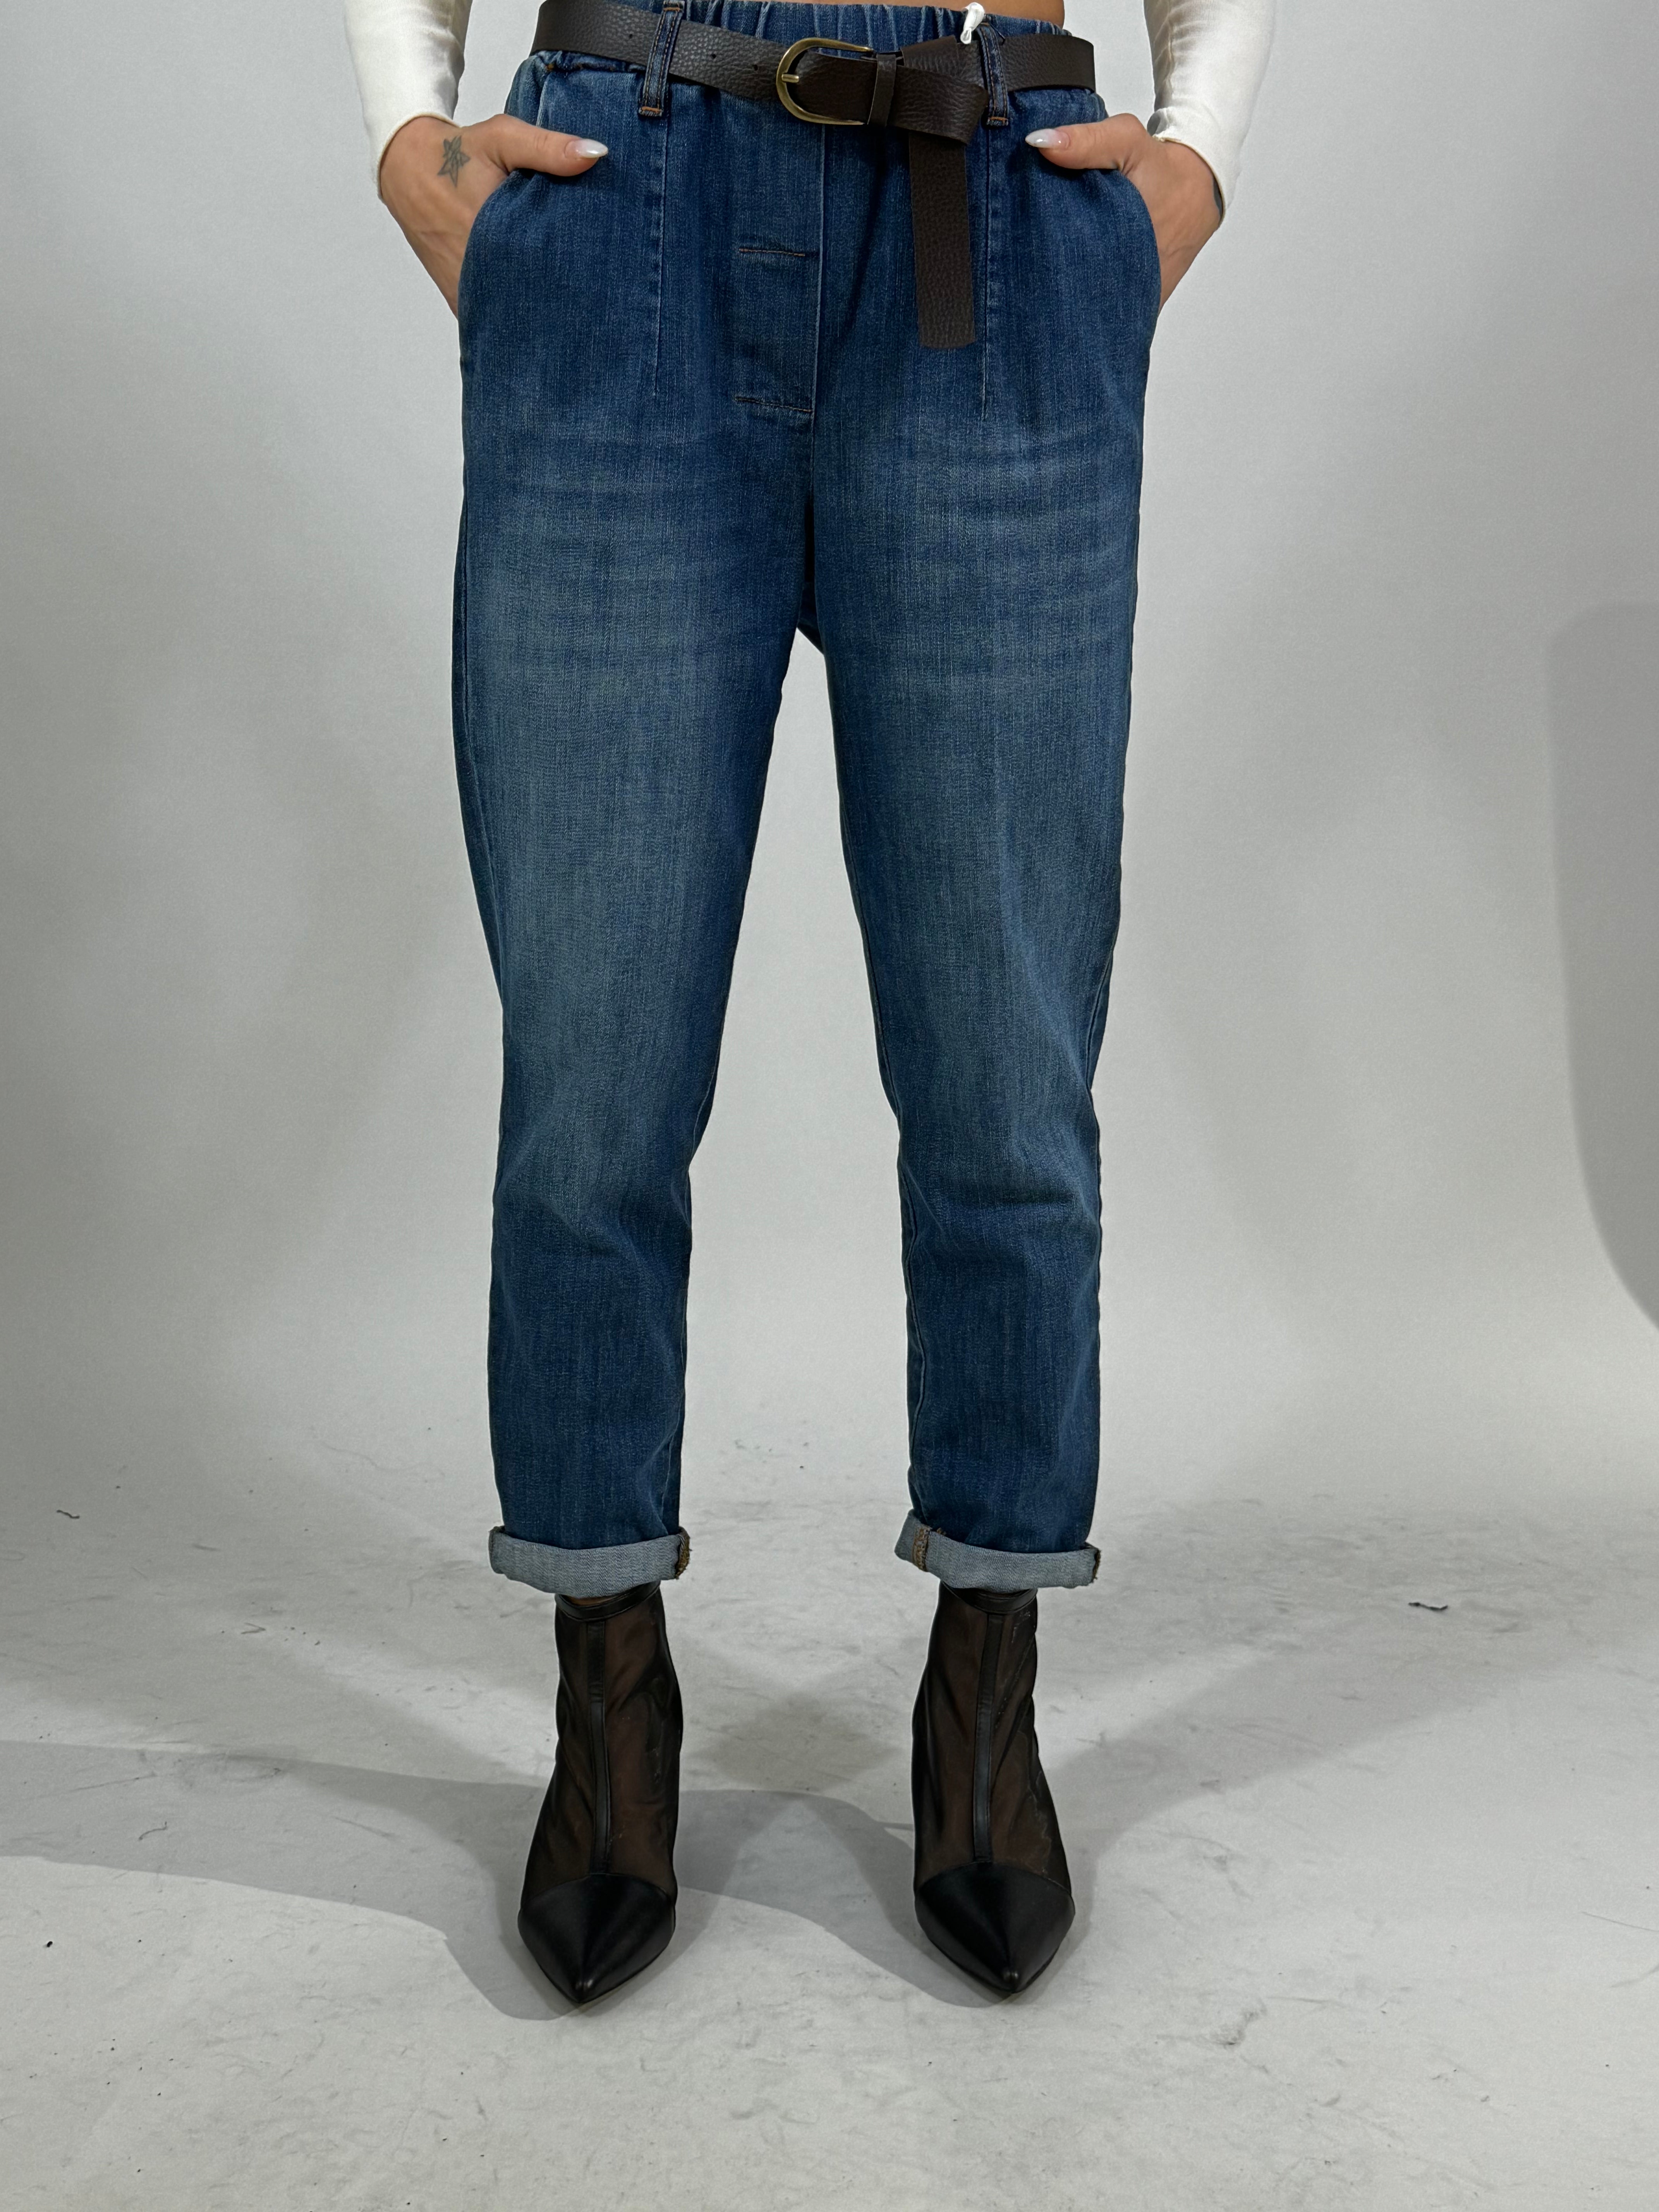 Jeans Susy Mix con elastico in vita e cintura